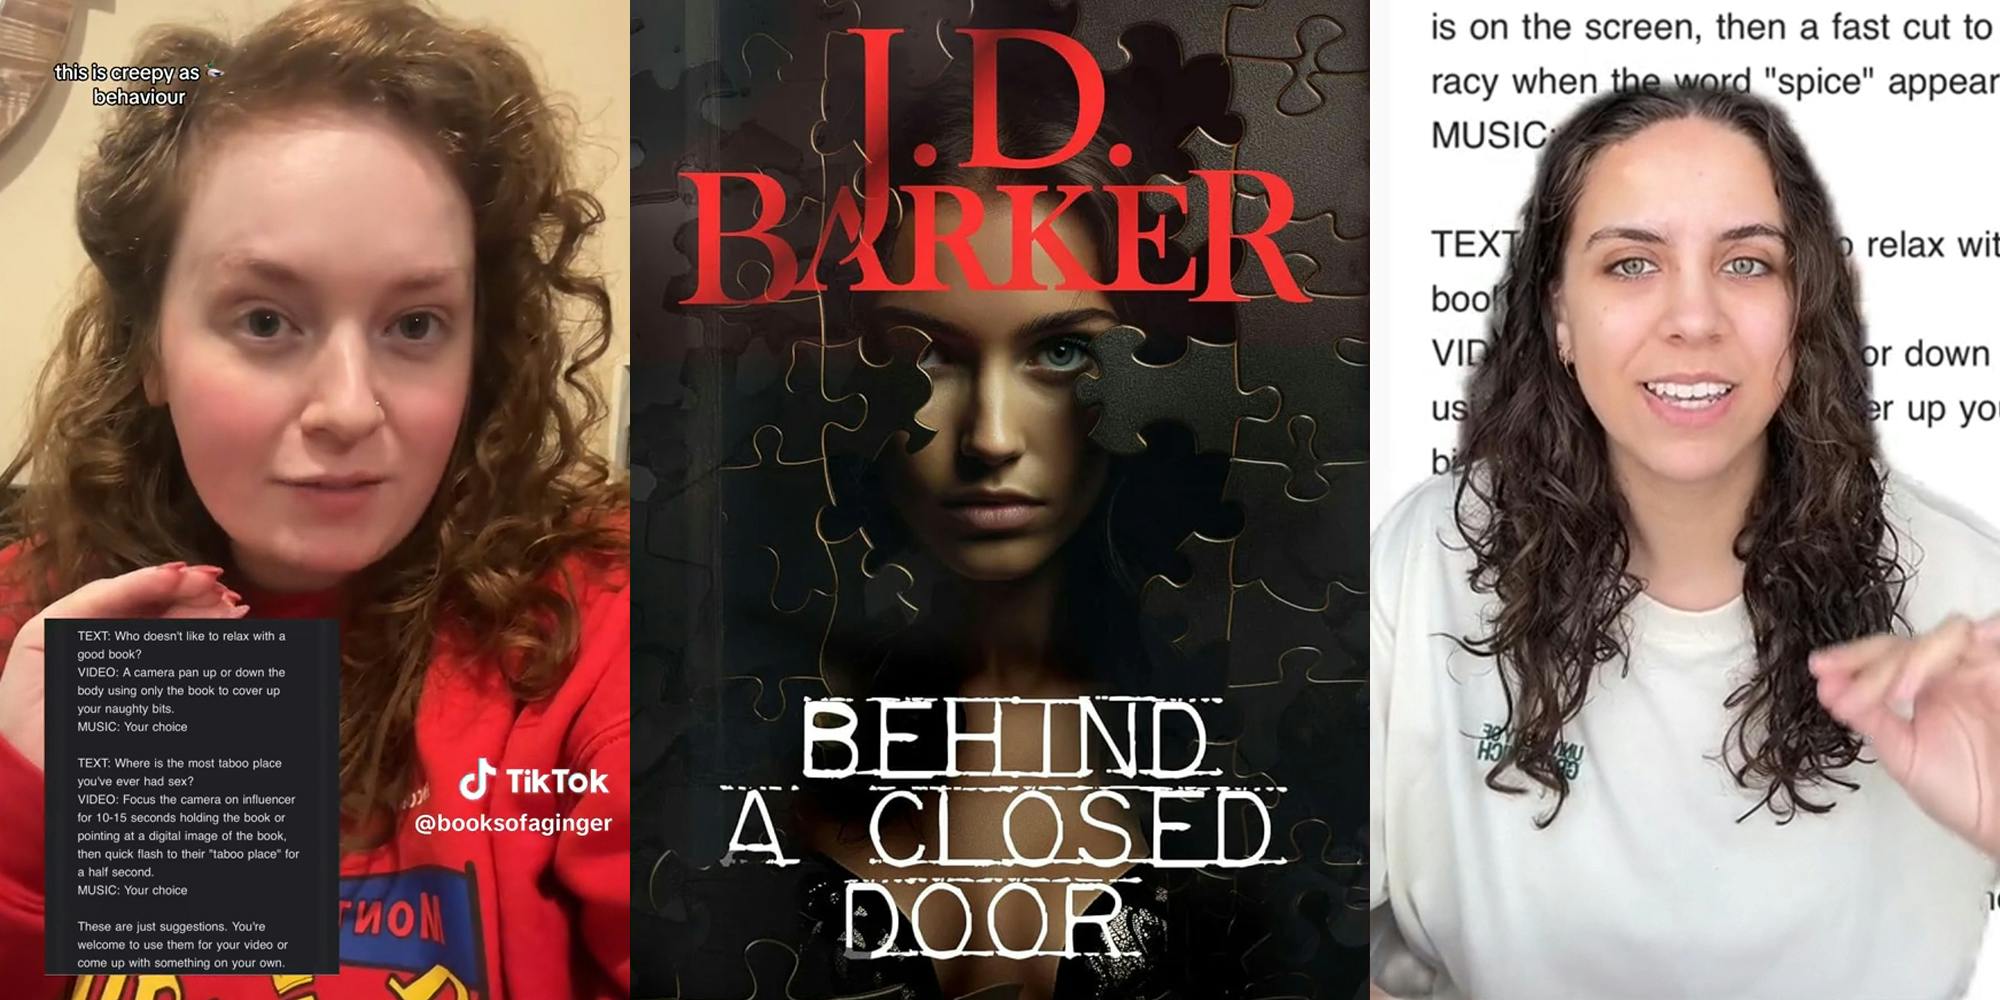 booktok j.d. barker behind a closed door